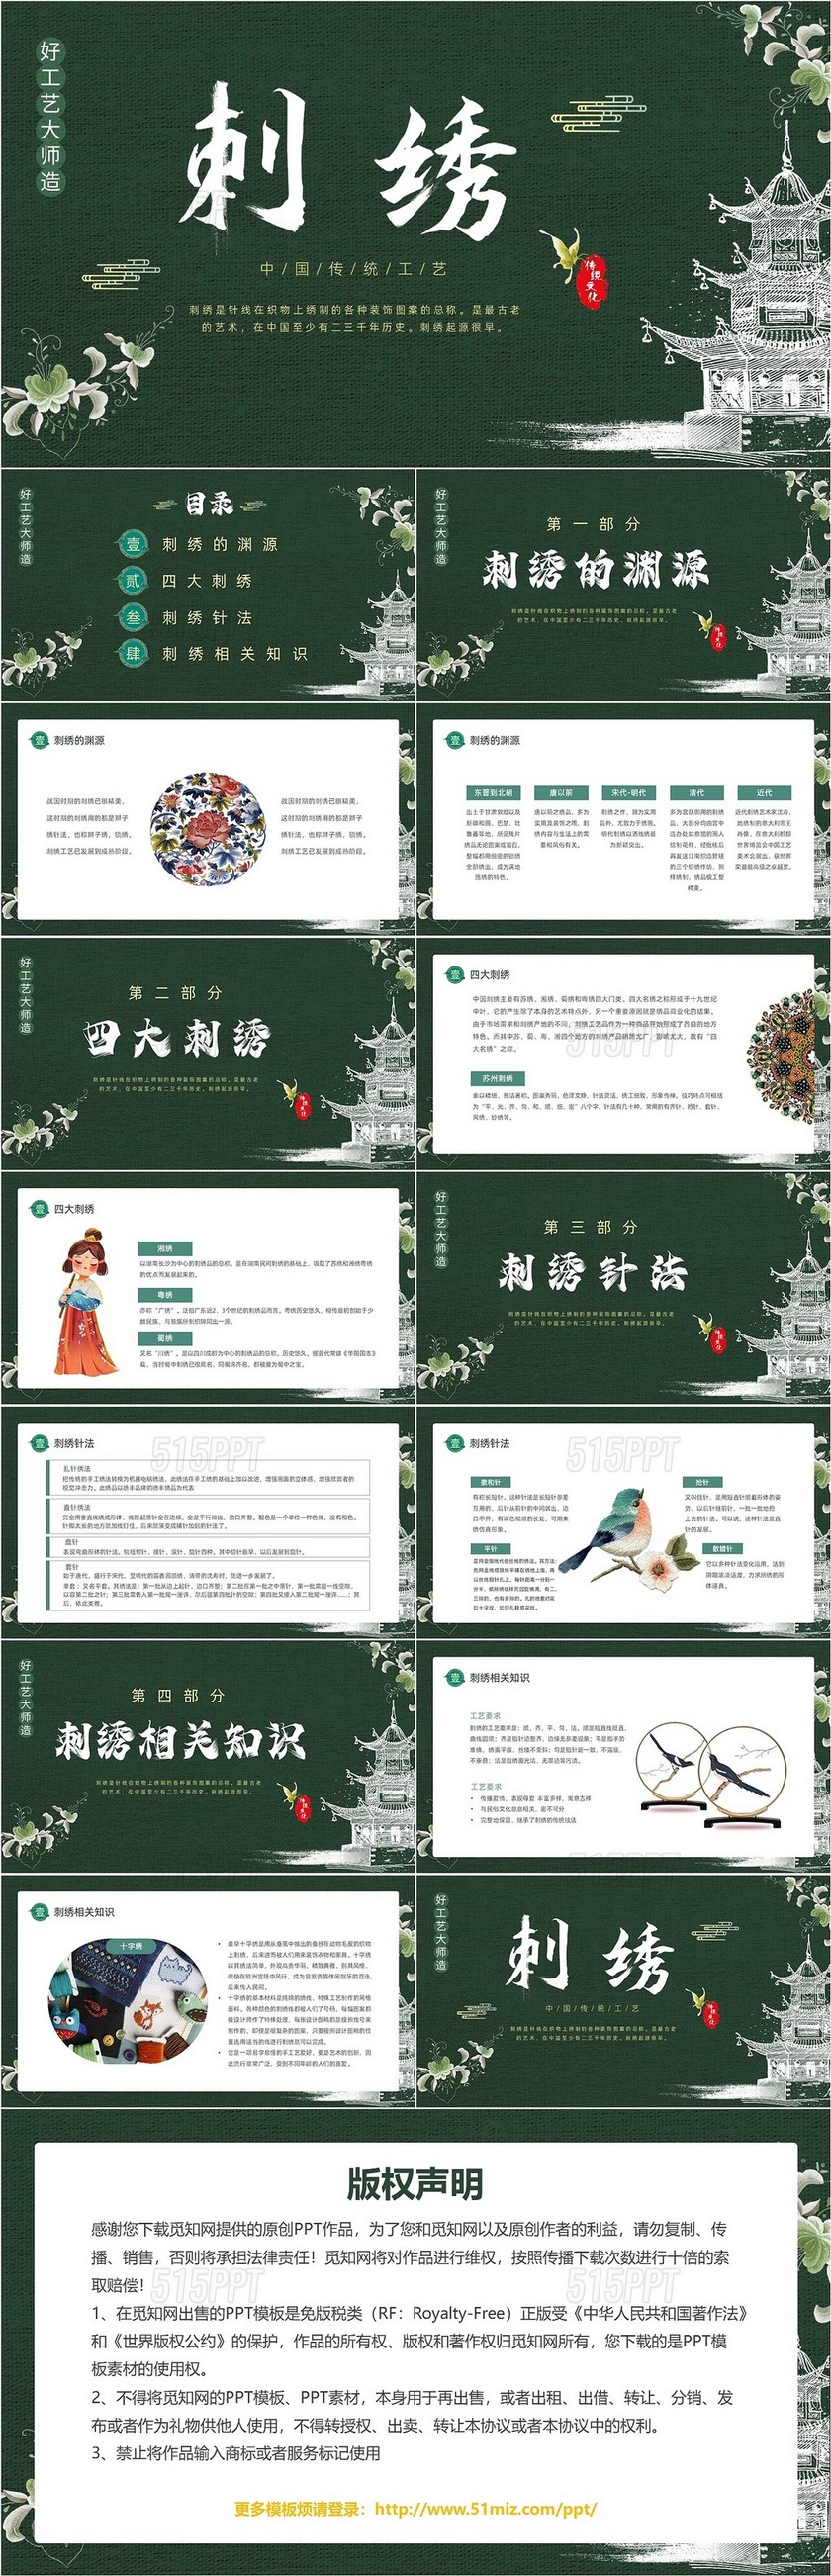 墨绿色中国风古风传统文化刺绣动态PPT